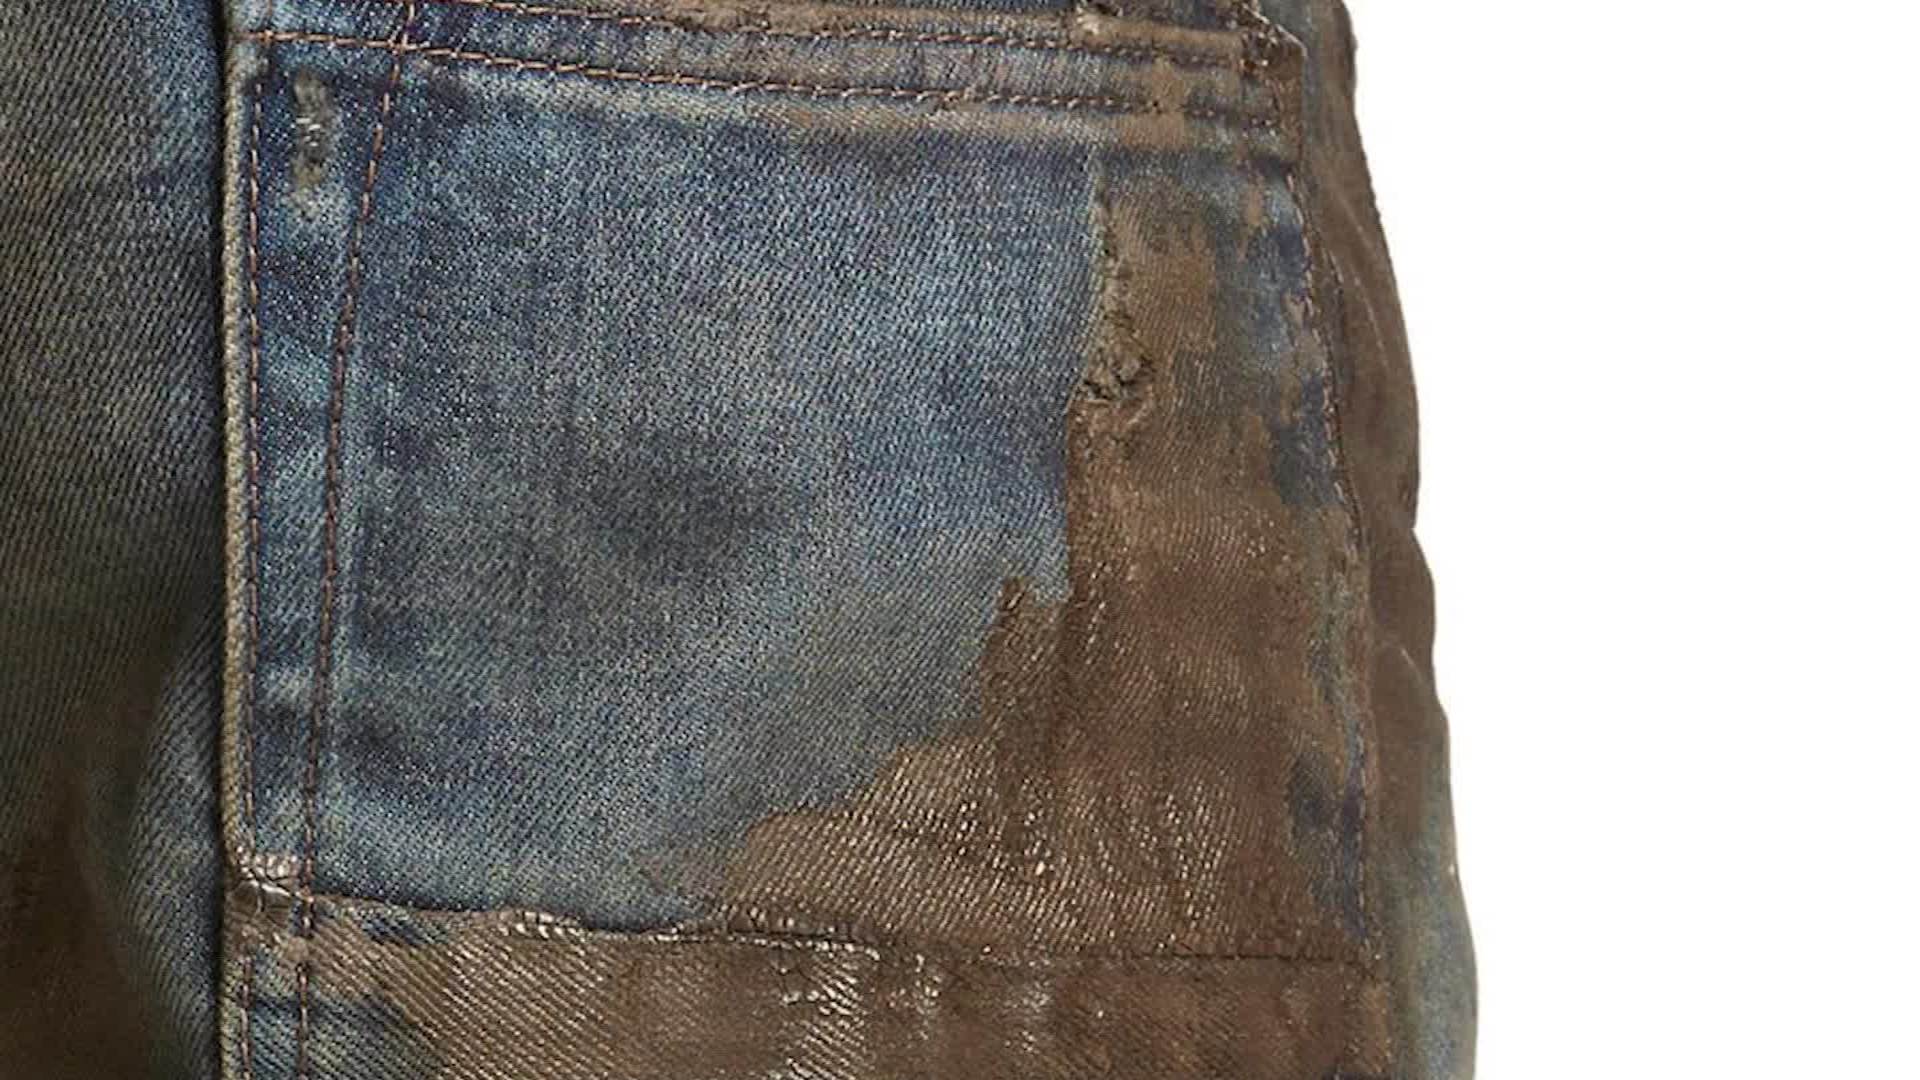 Джинсы грязного цвета. Грязные джинсы. Старые грязные джинсы. Грязный джинс цвет.